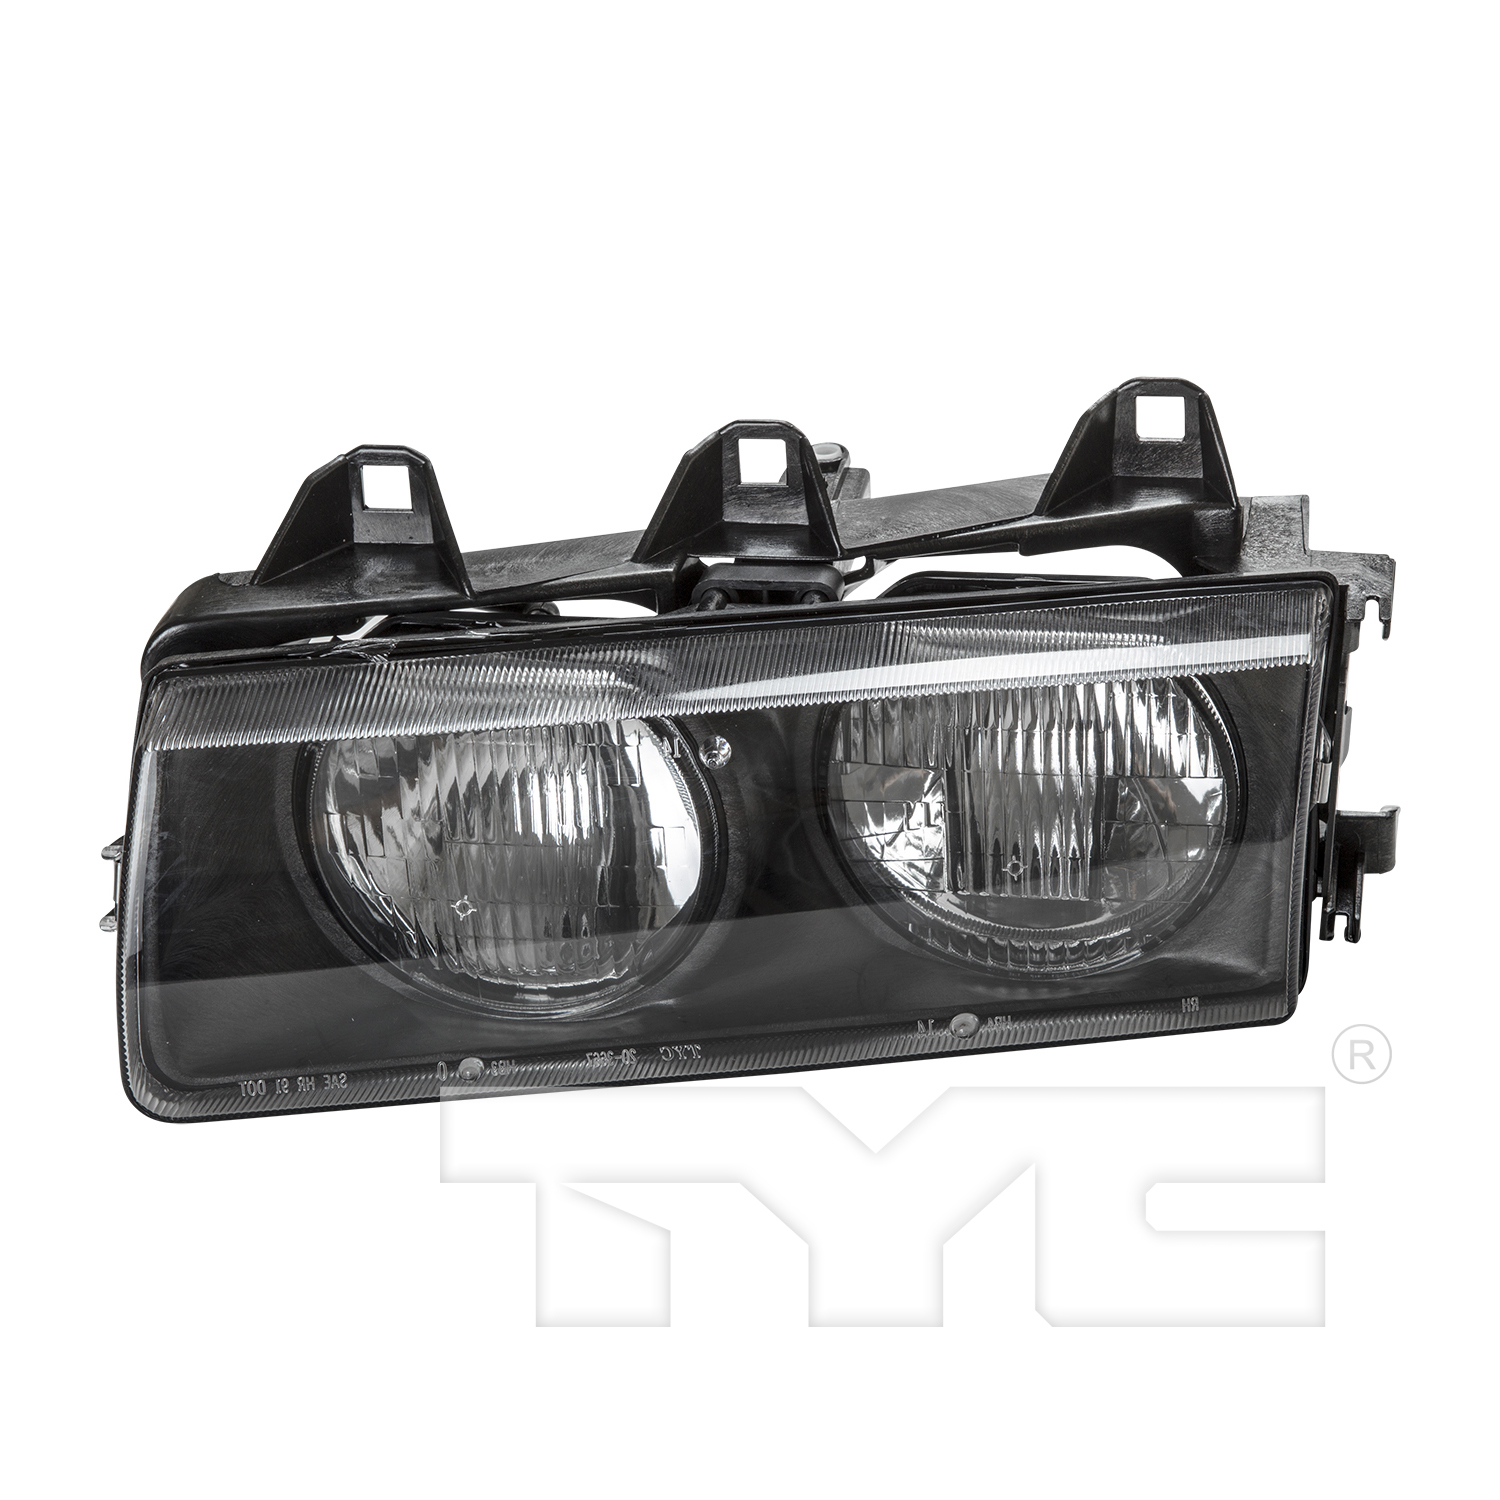 Aftermarket HEADLIGHTS for BMW - 318I, 318i,94-99,LT Headlamp assy composite